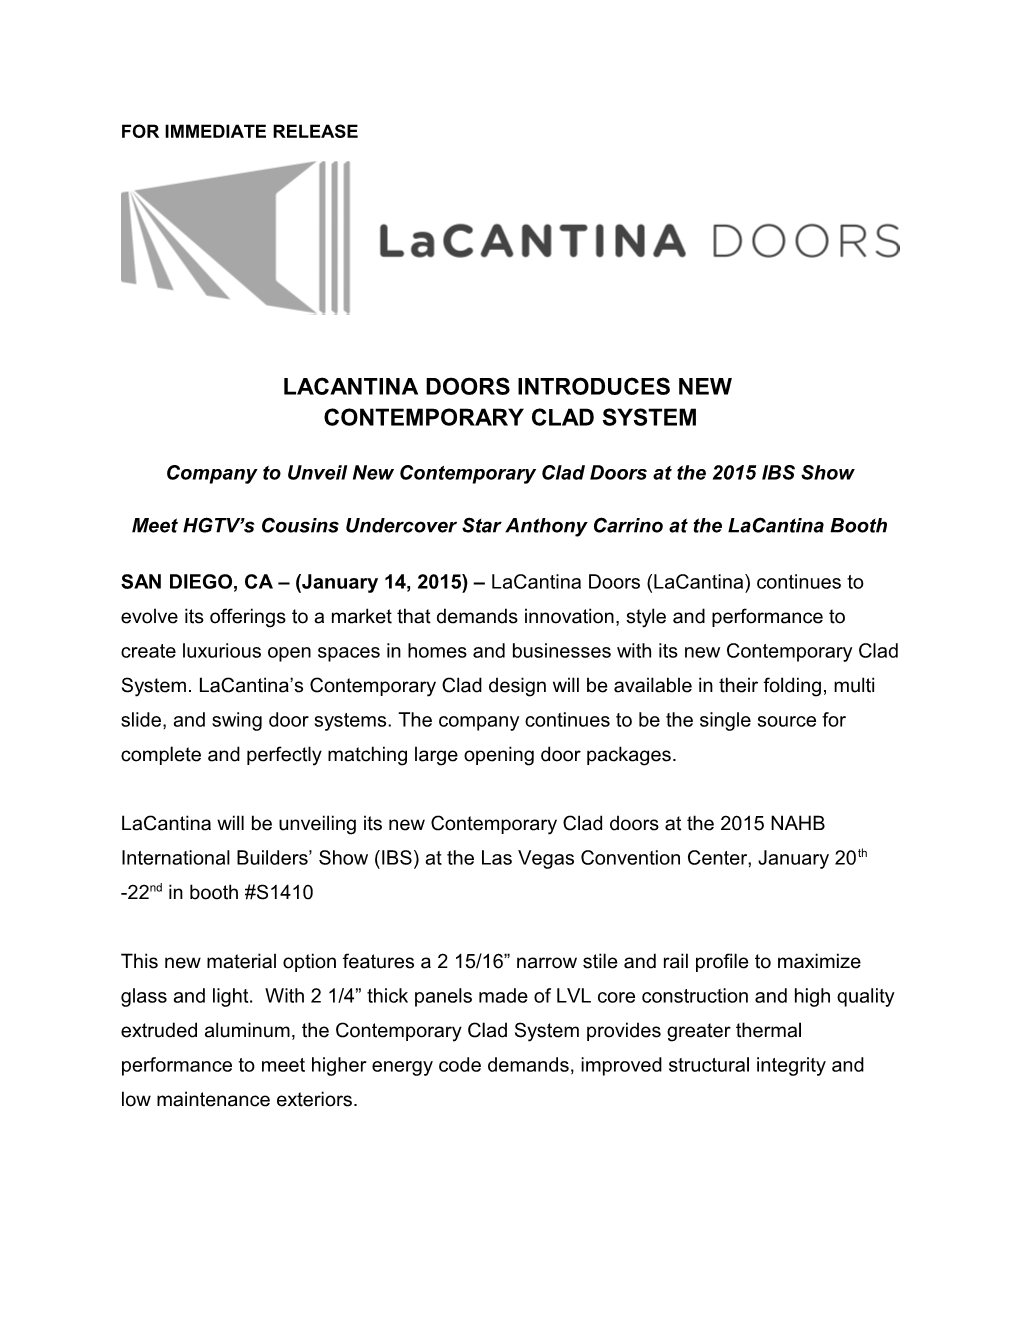 Lacantina Doors Introduces New